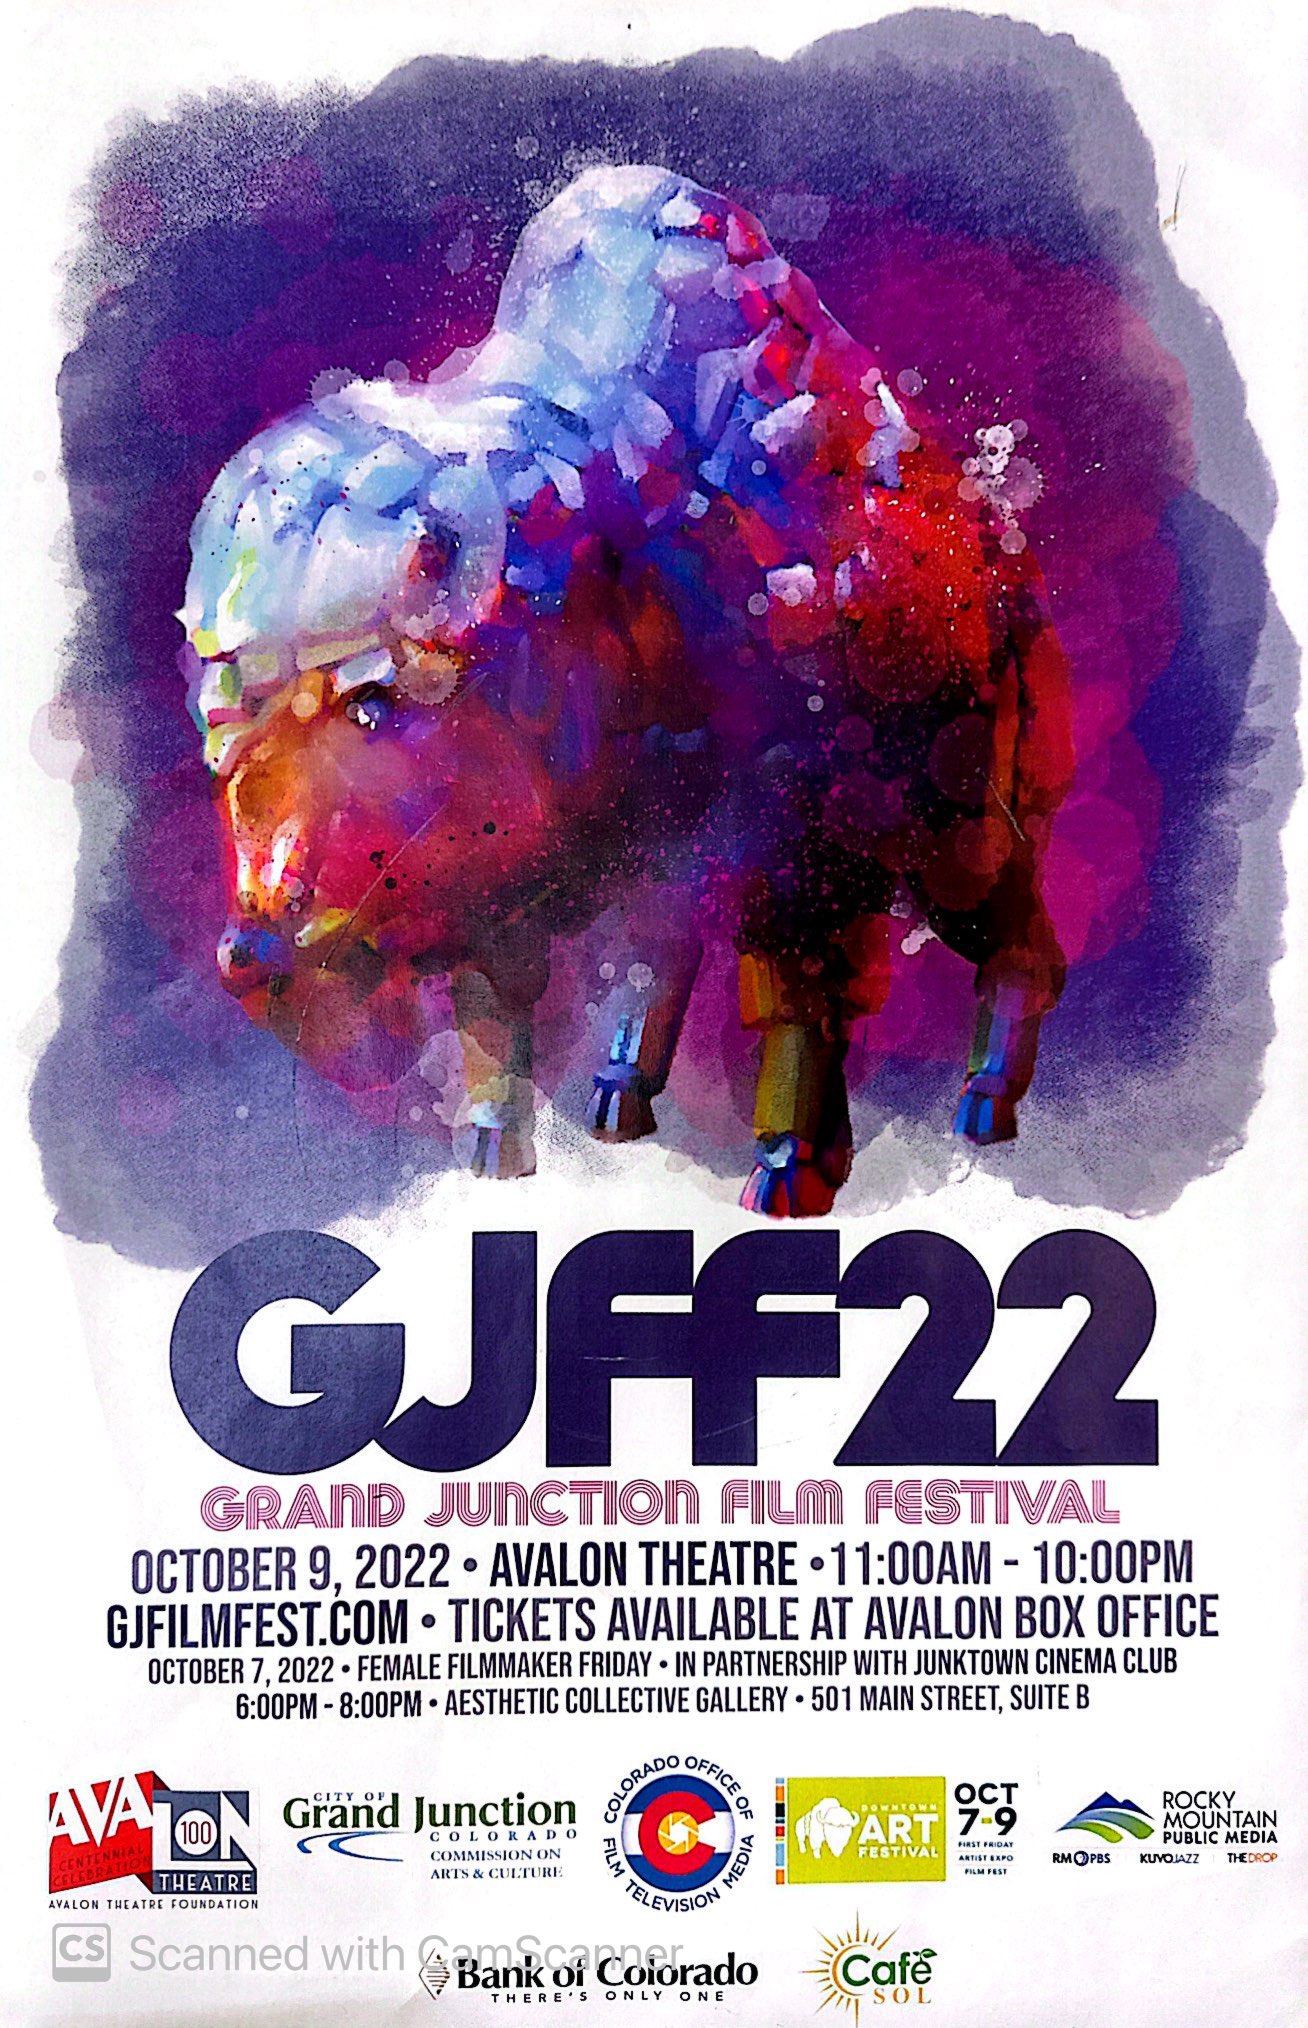 GJFF22-Grand Junction Film Festival 2022 Image